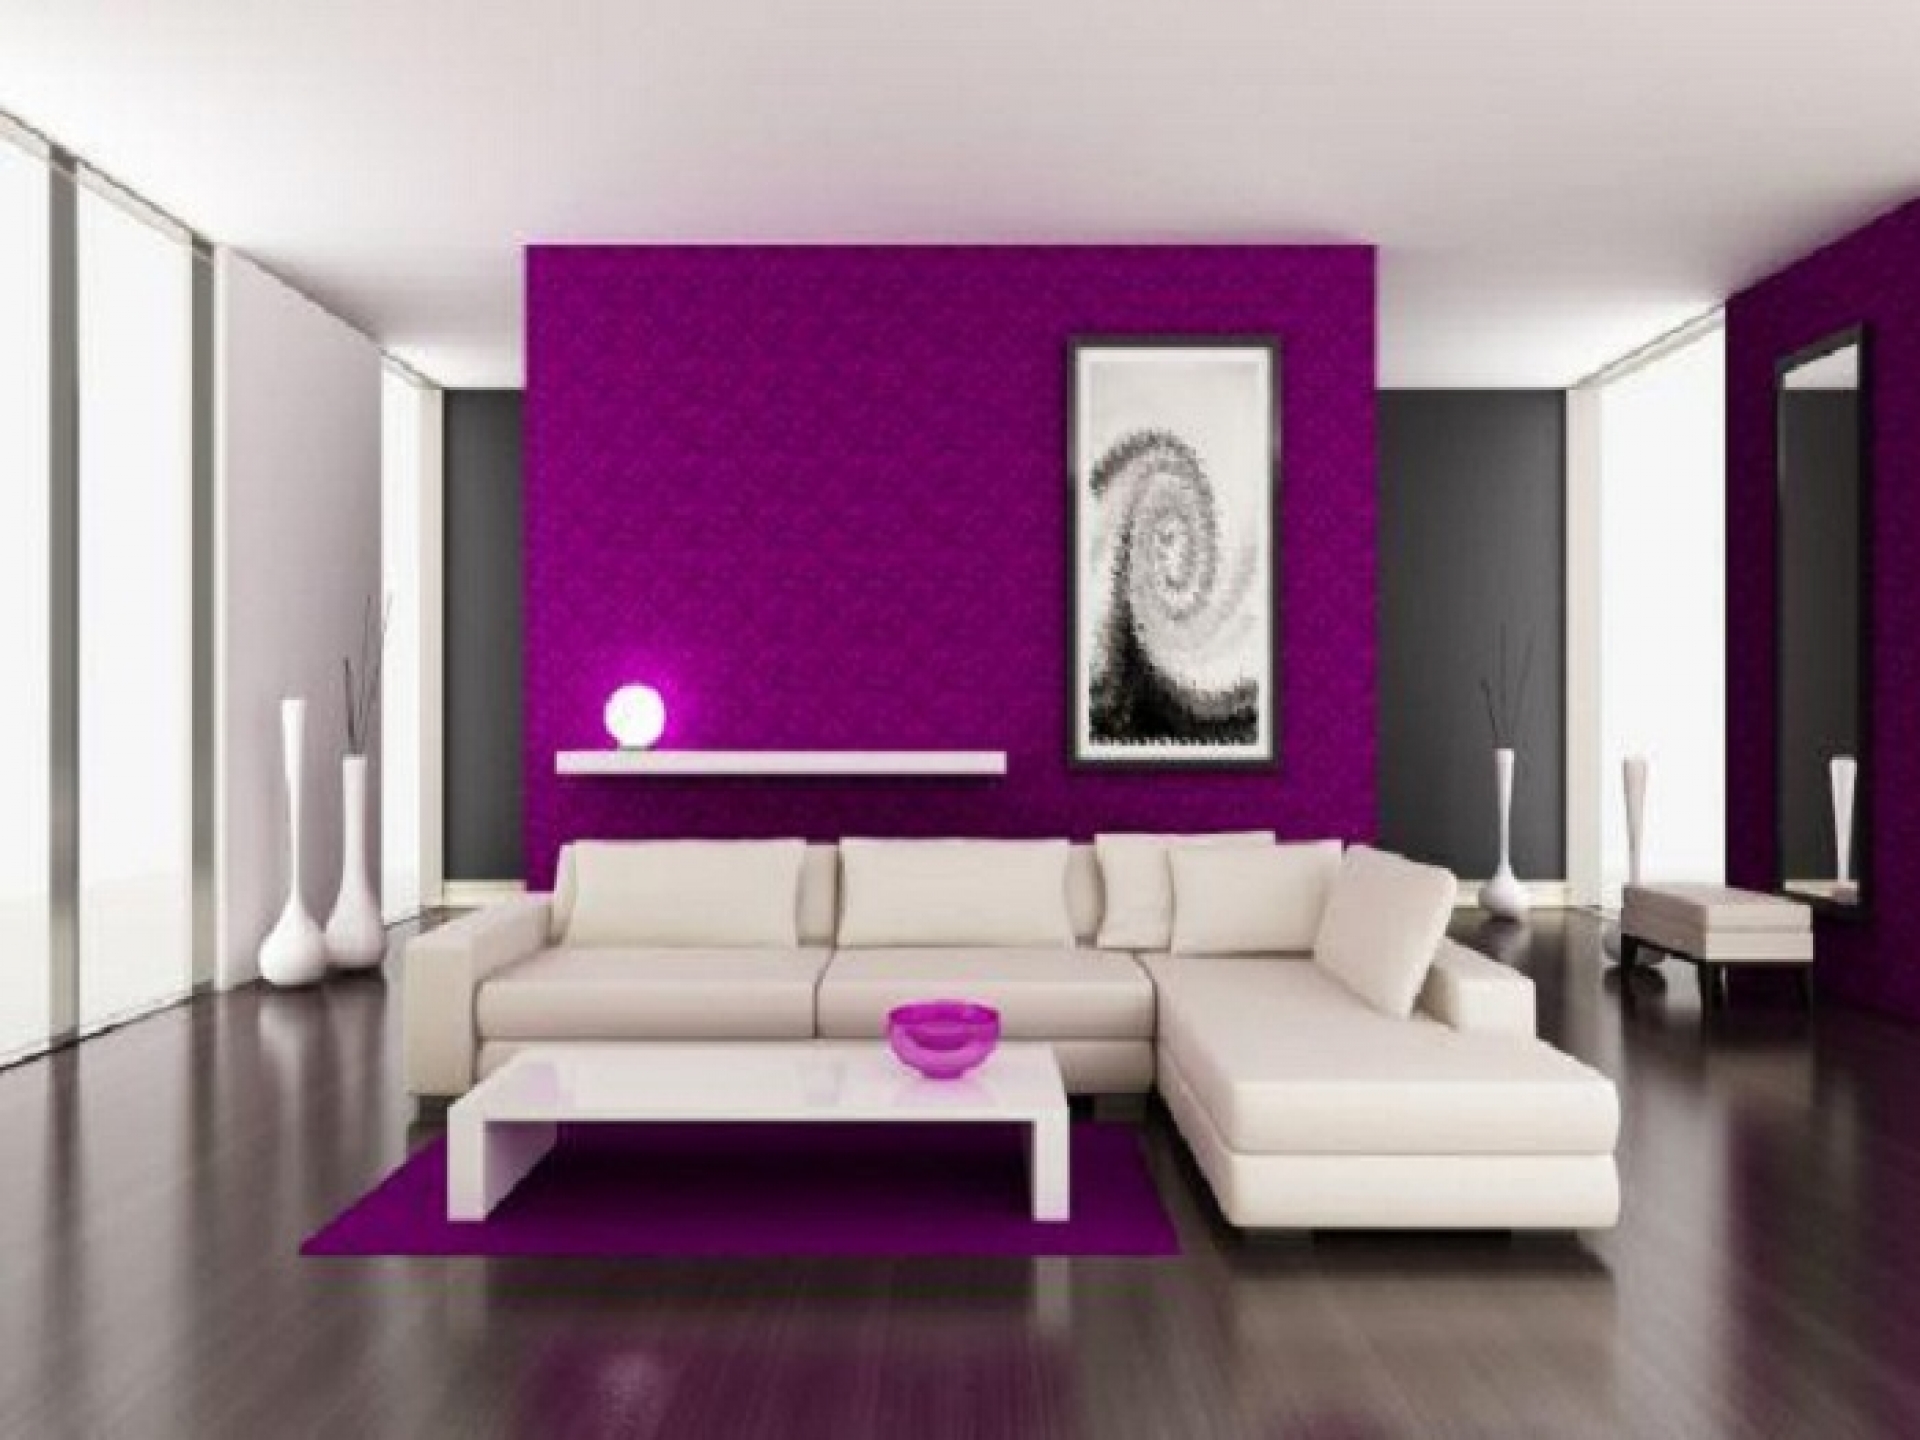 Idea ruang tamu ungu dengan gabungan perabot moden putih menjadikan ruang lebih eksklusif